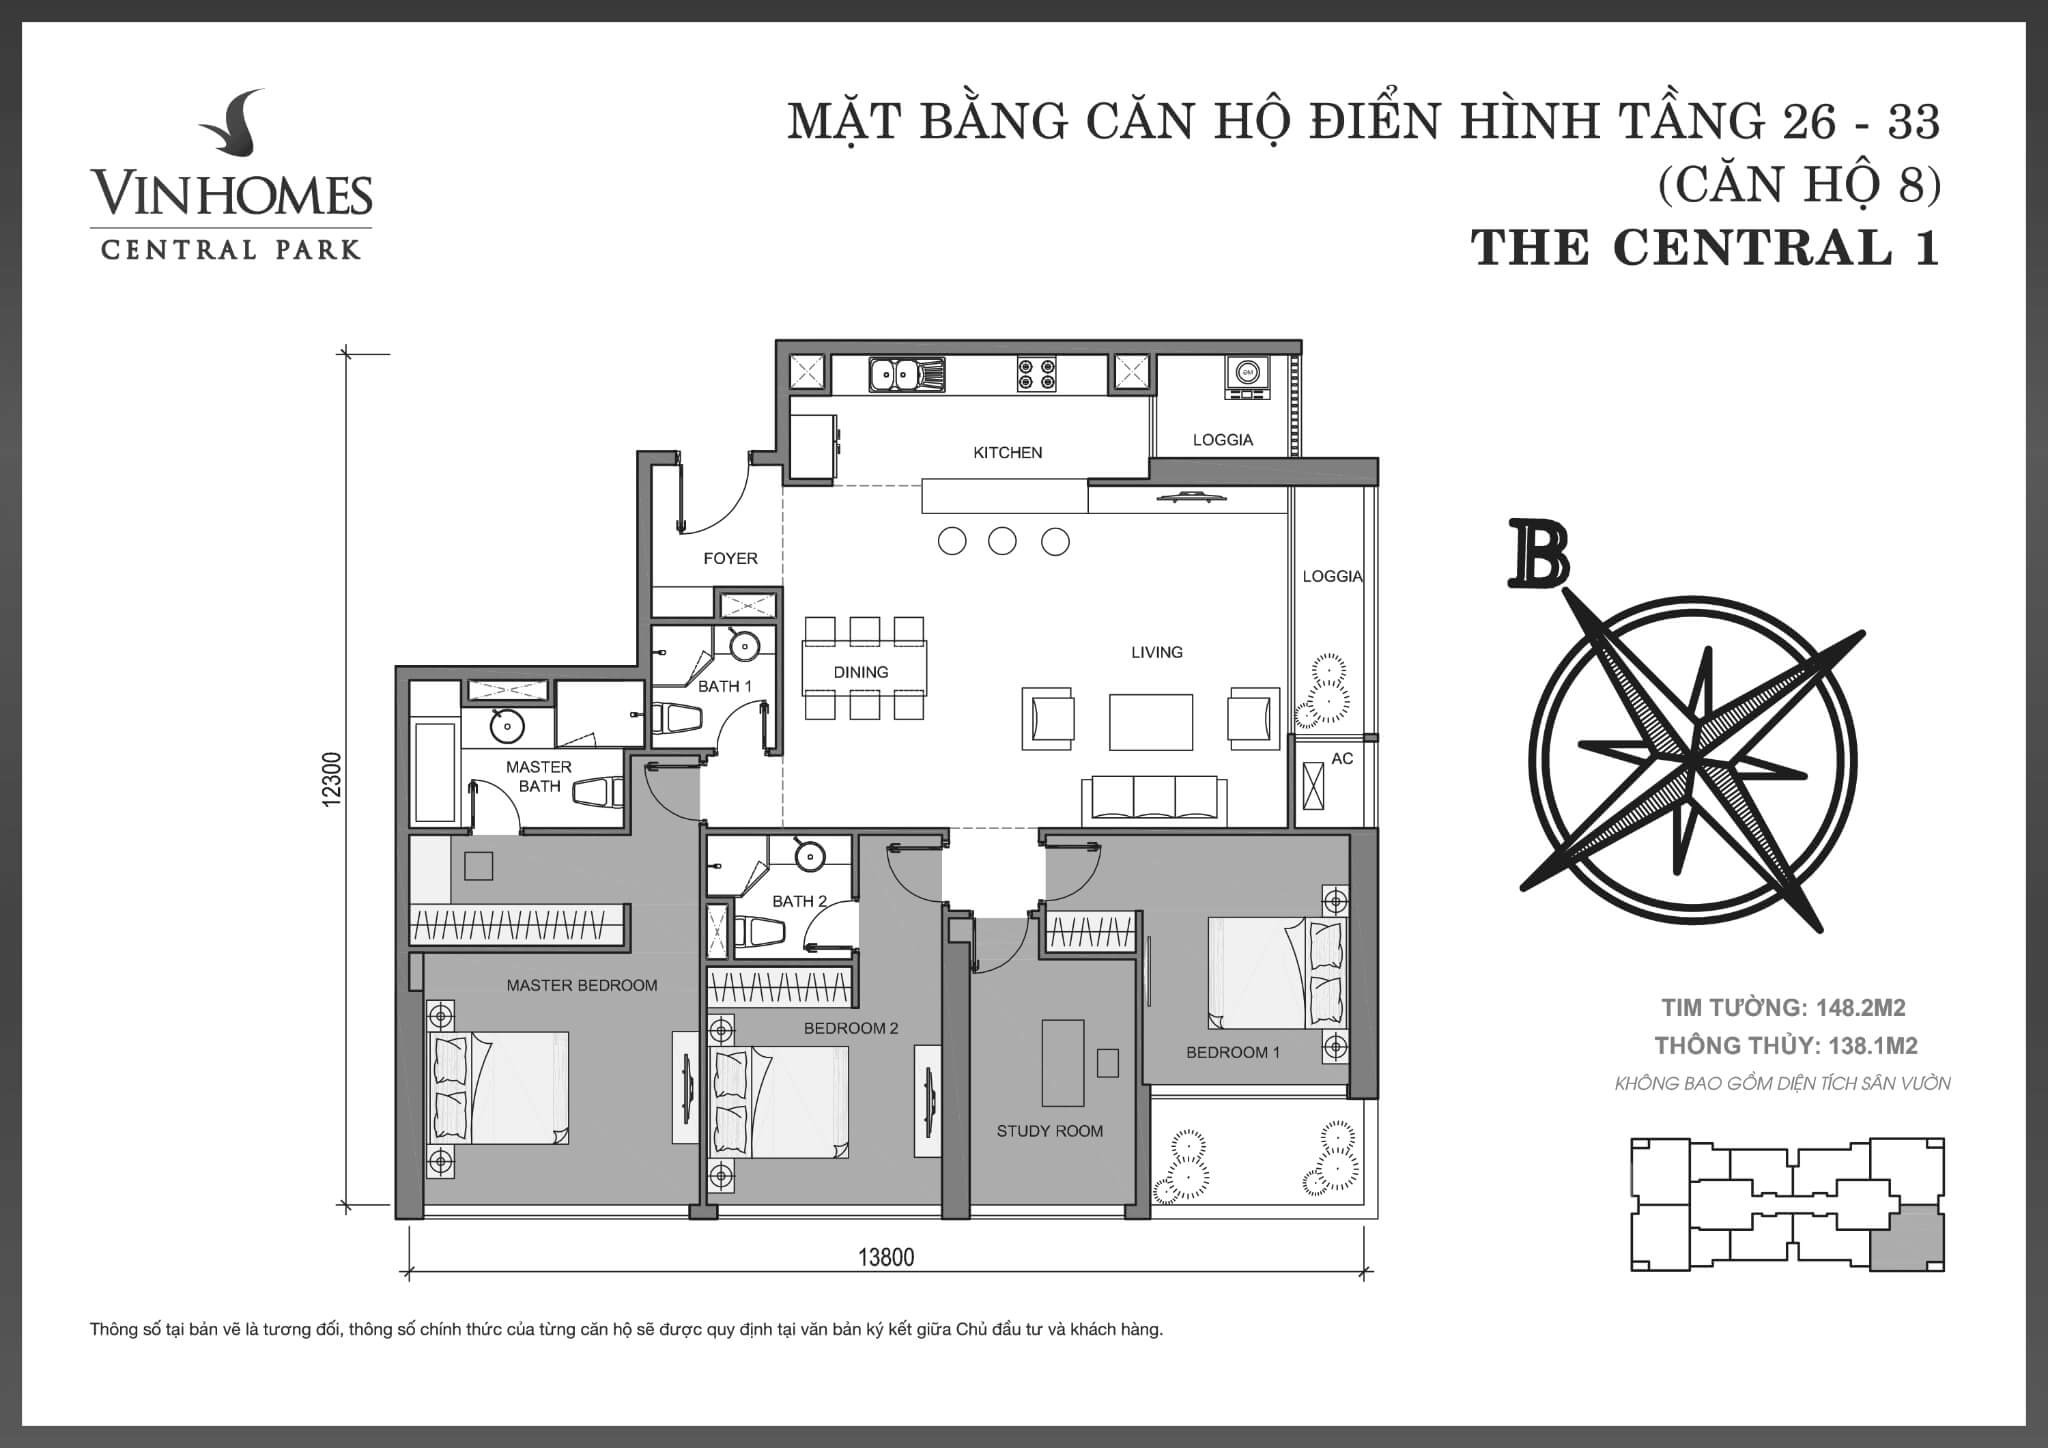 layout căn hộ số 8 tầng 26-33 Central 1